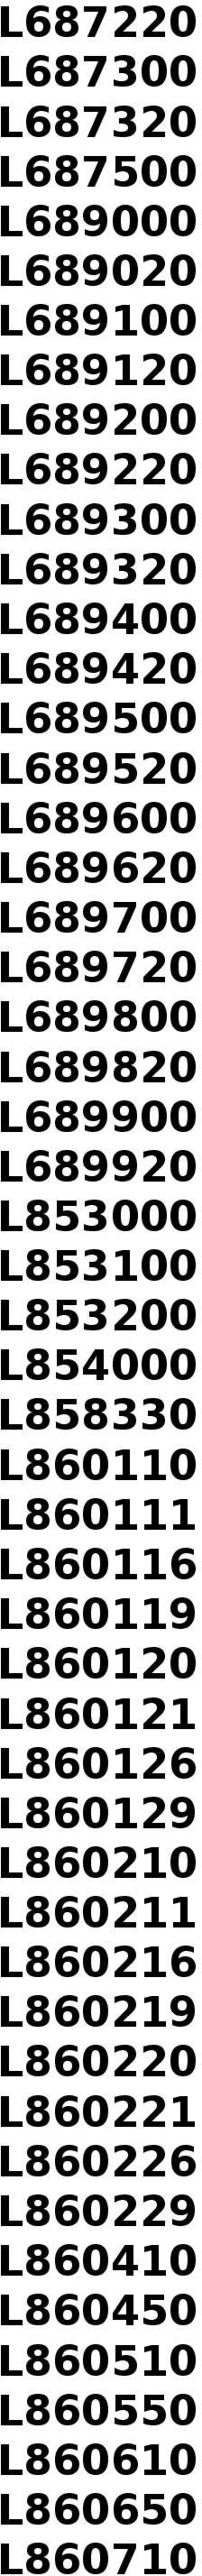 L853200 L854000 L858330 L860110 L860111 L860116 L860119 L860120 L860121 L860126 L860129 L860210 L860211